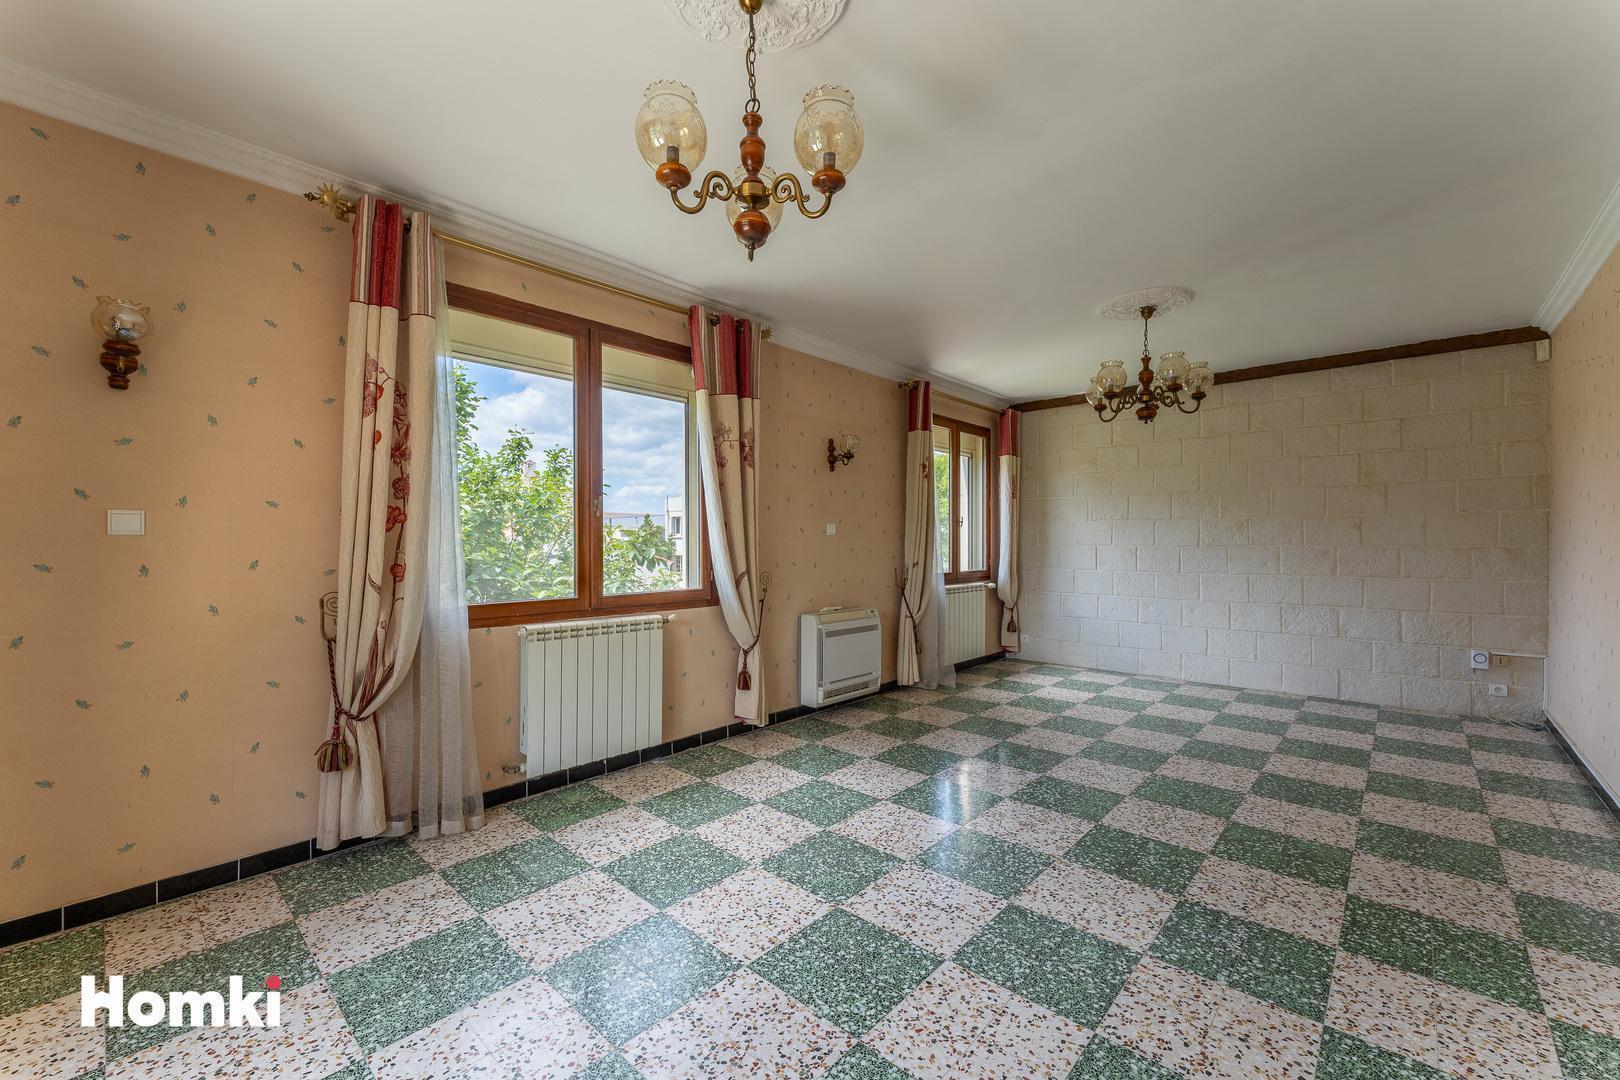 Homki - Vente Maison/villa  de 157.0 m² à Arles 13200